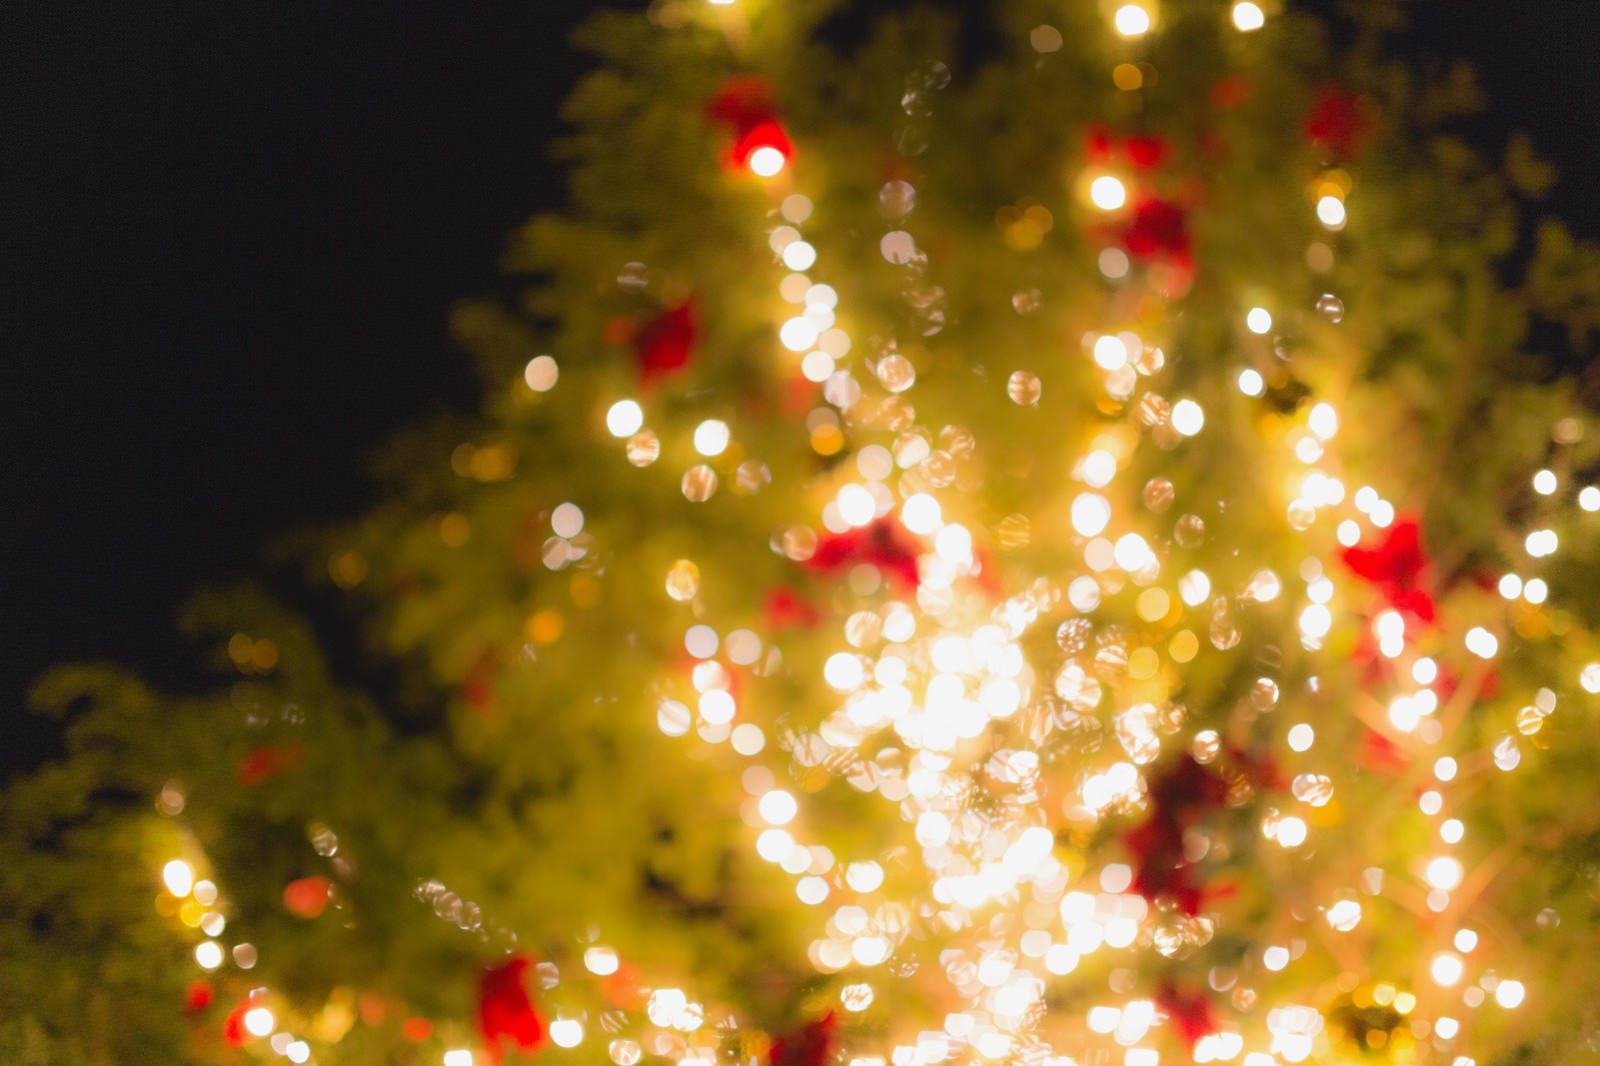 「点灯をはじめたクリスマスツリー」の写真